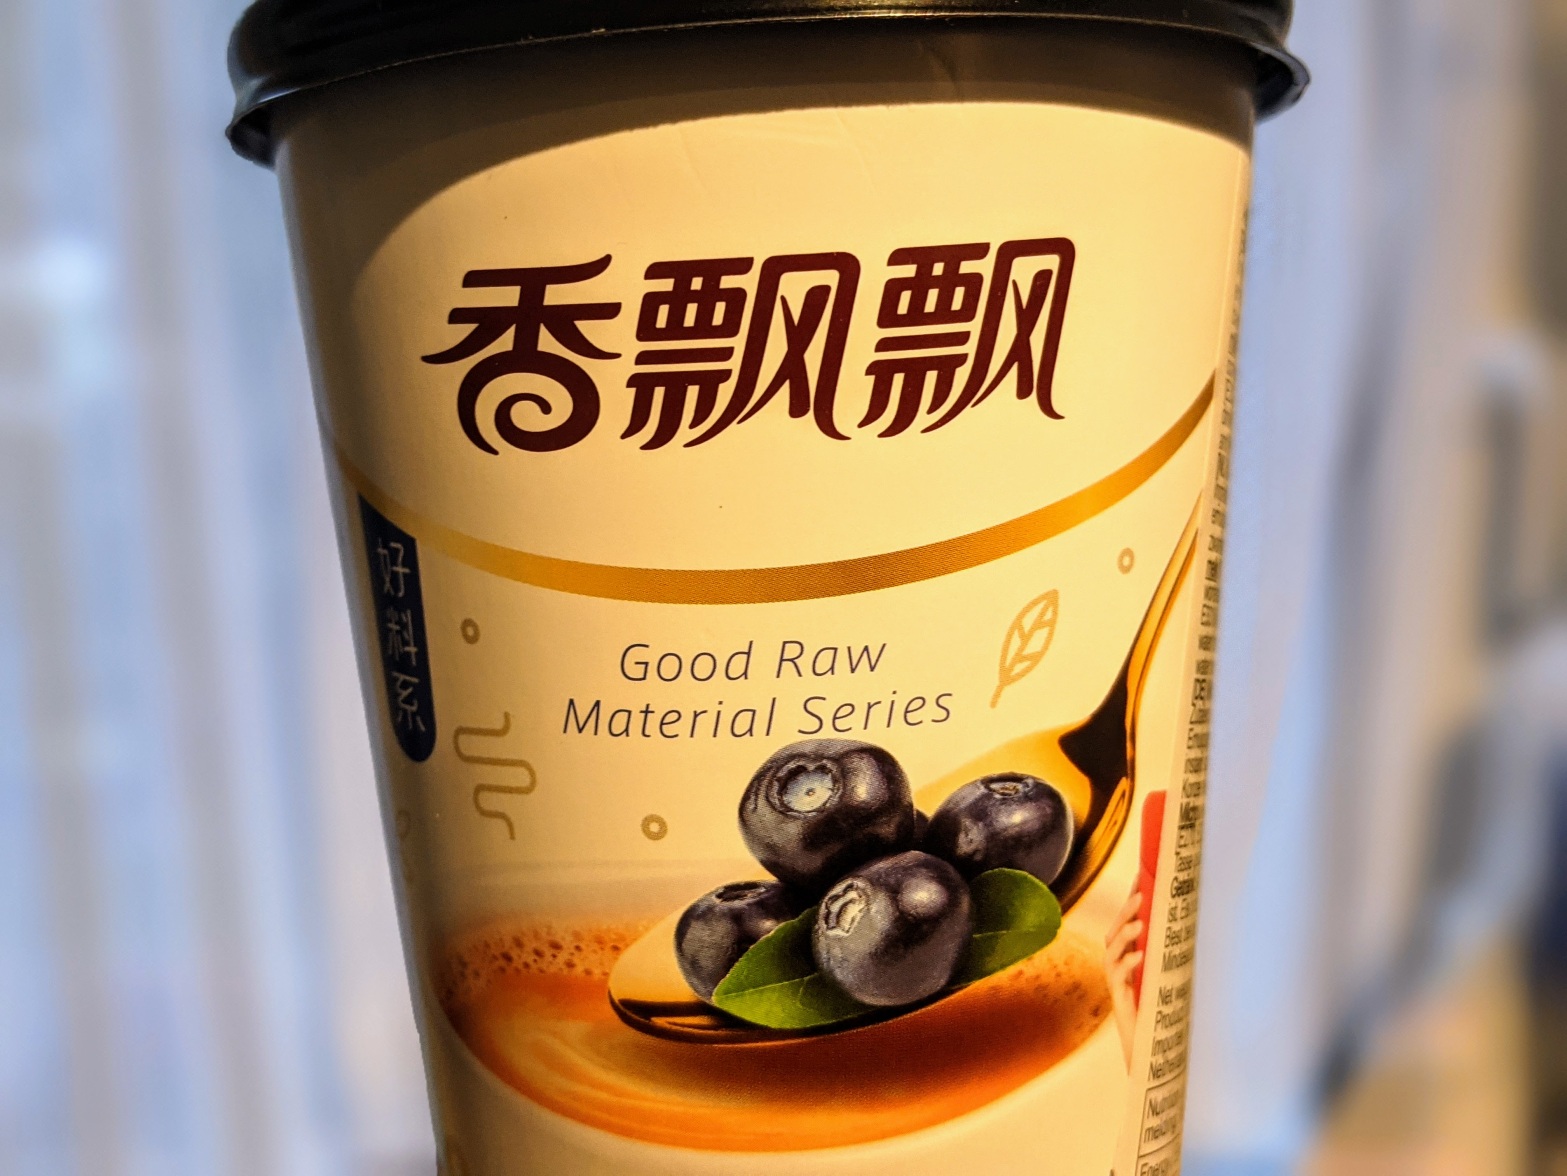 Tea Test: XPP Premium Milk Tea (Blueberry)